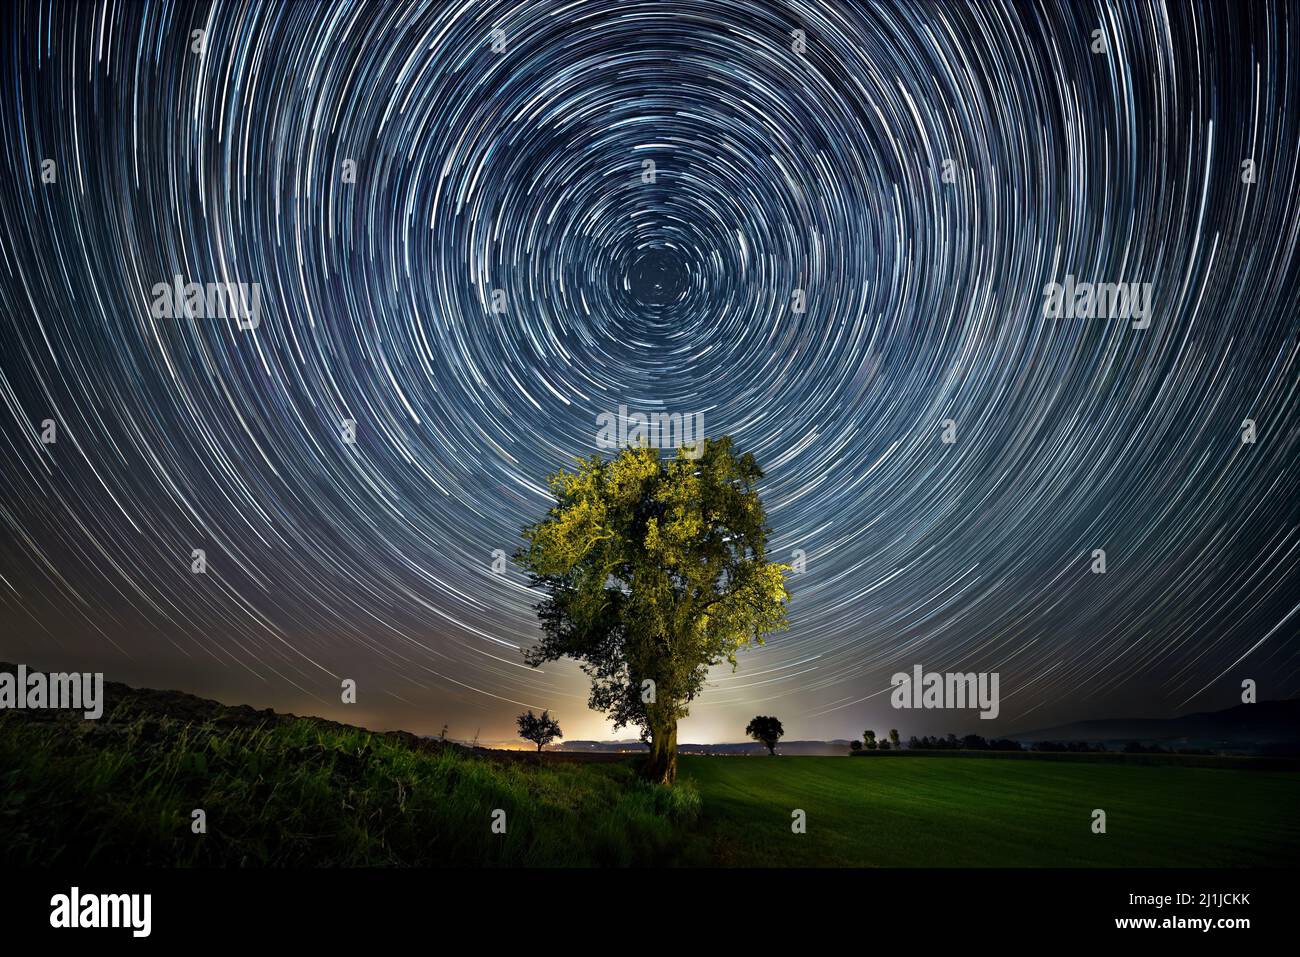 Cielo nocturno sobre un árbol solitario con rastros circulares de estrellas, composición centrada y simétrica Foto de stock